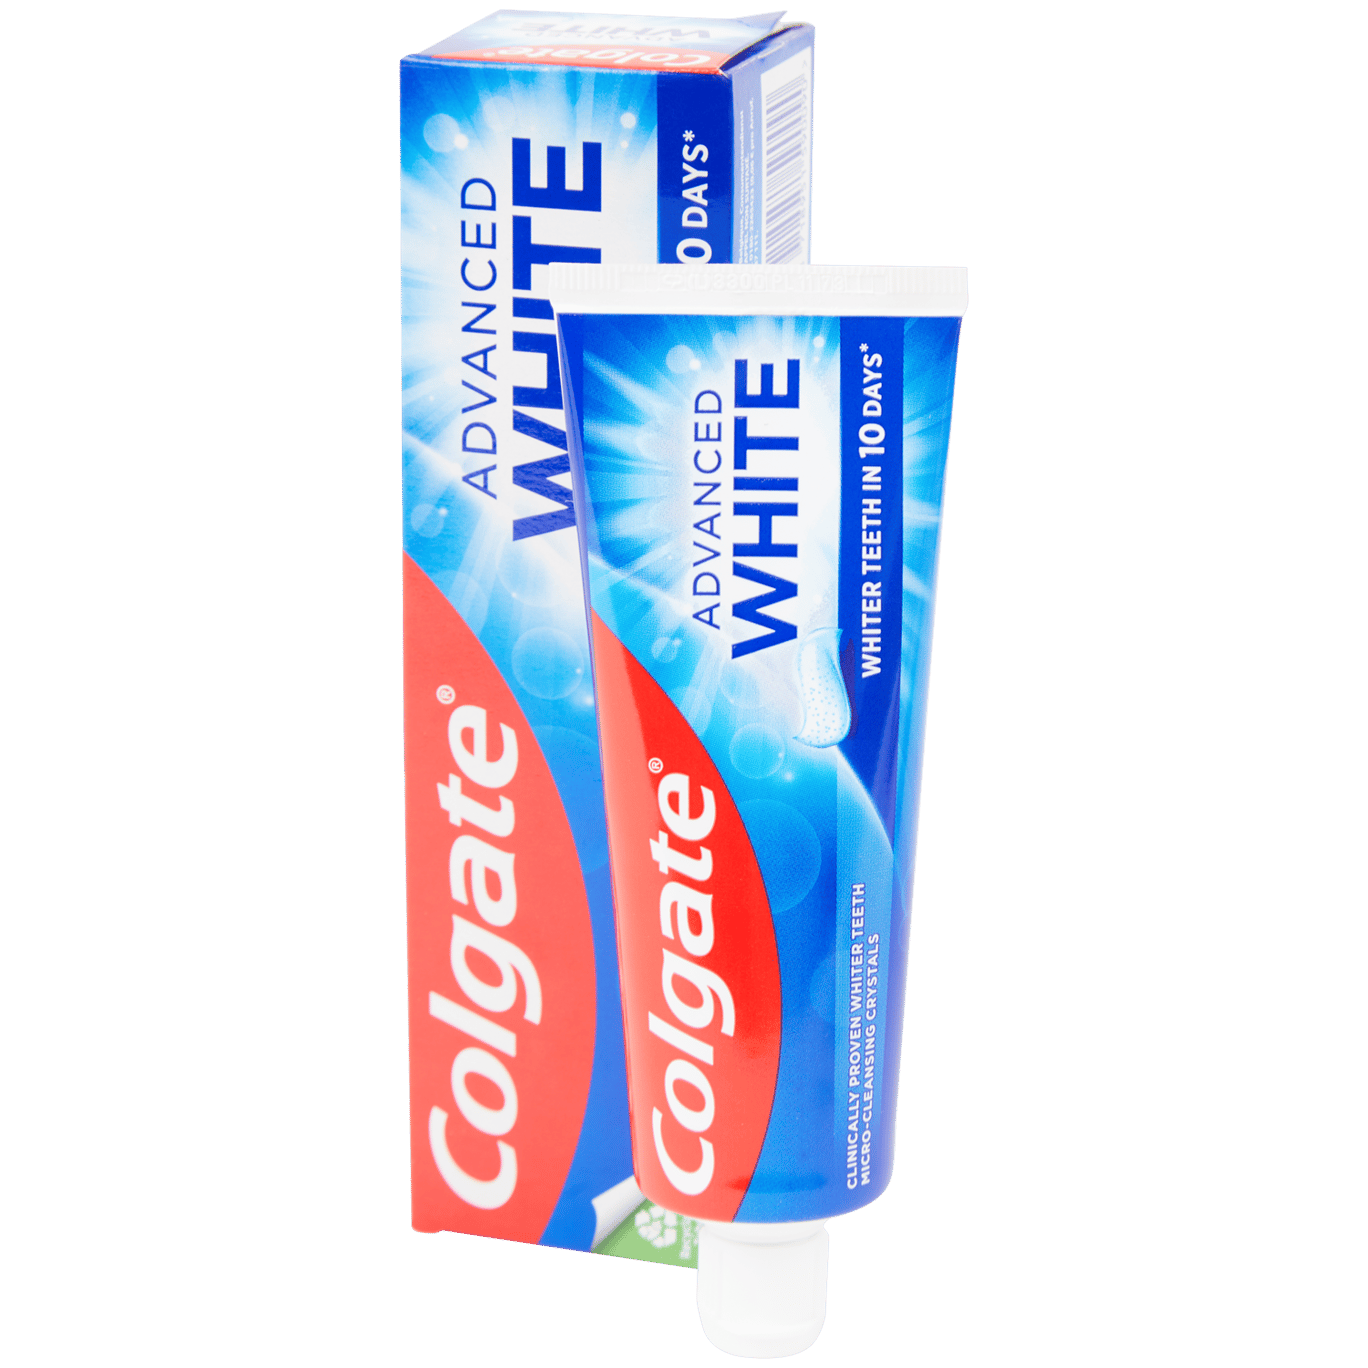 Pasta de dientes Colgate Advanced White